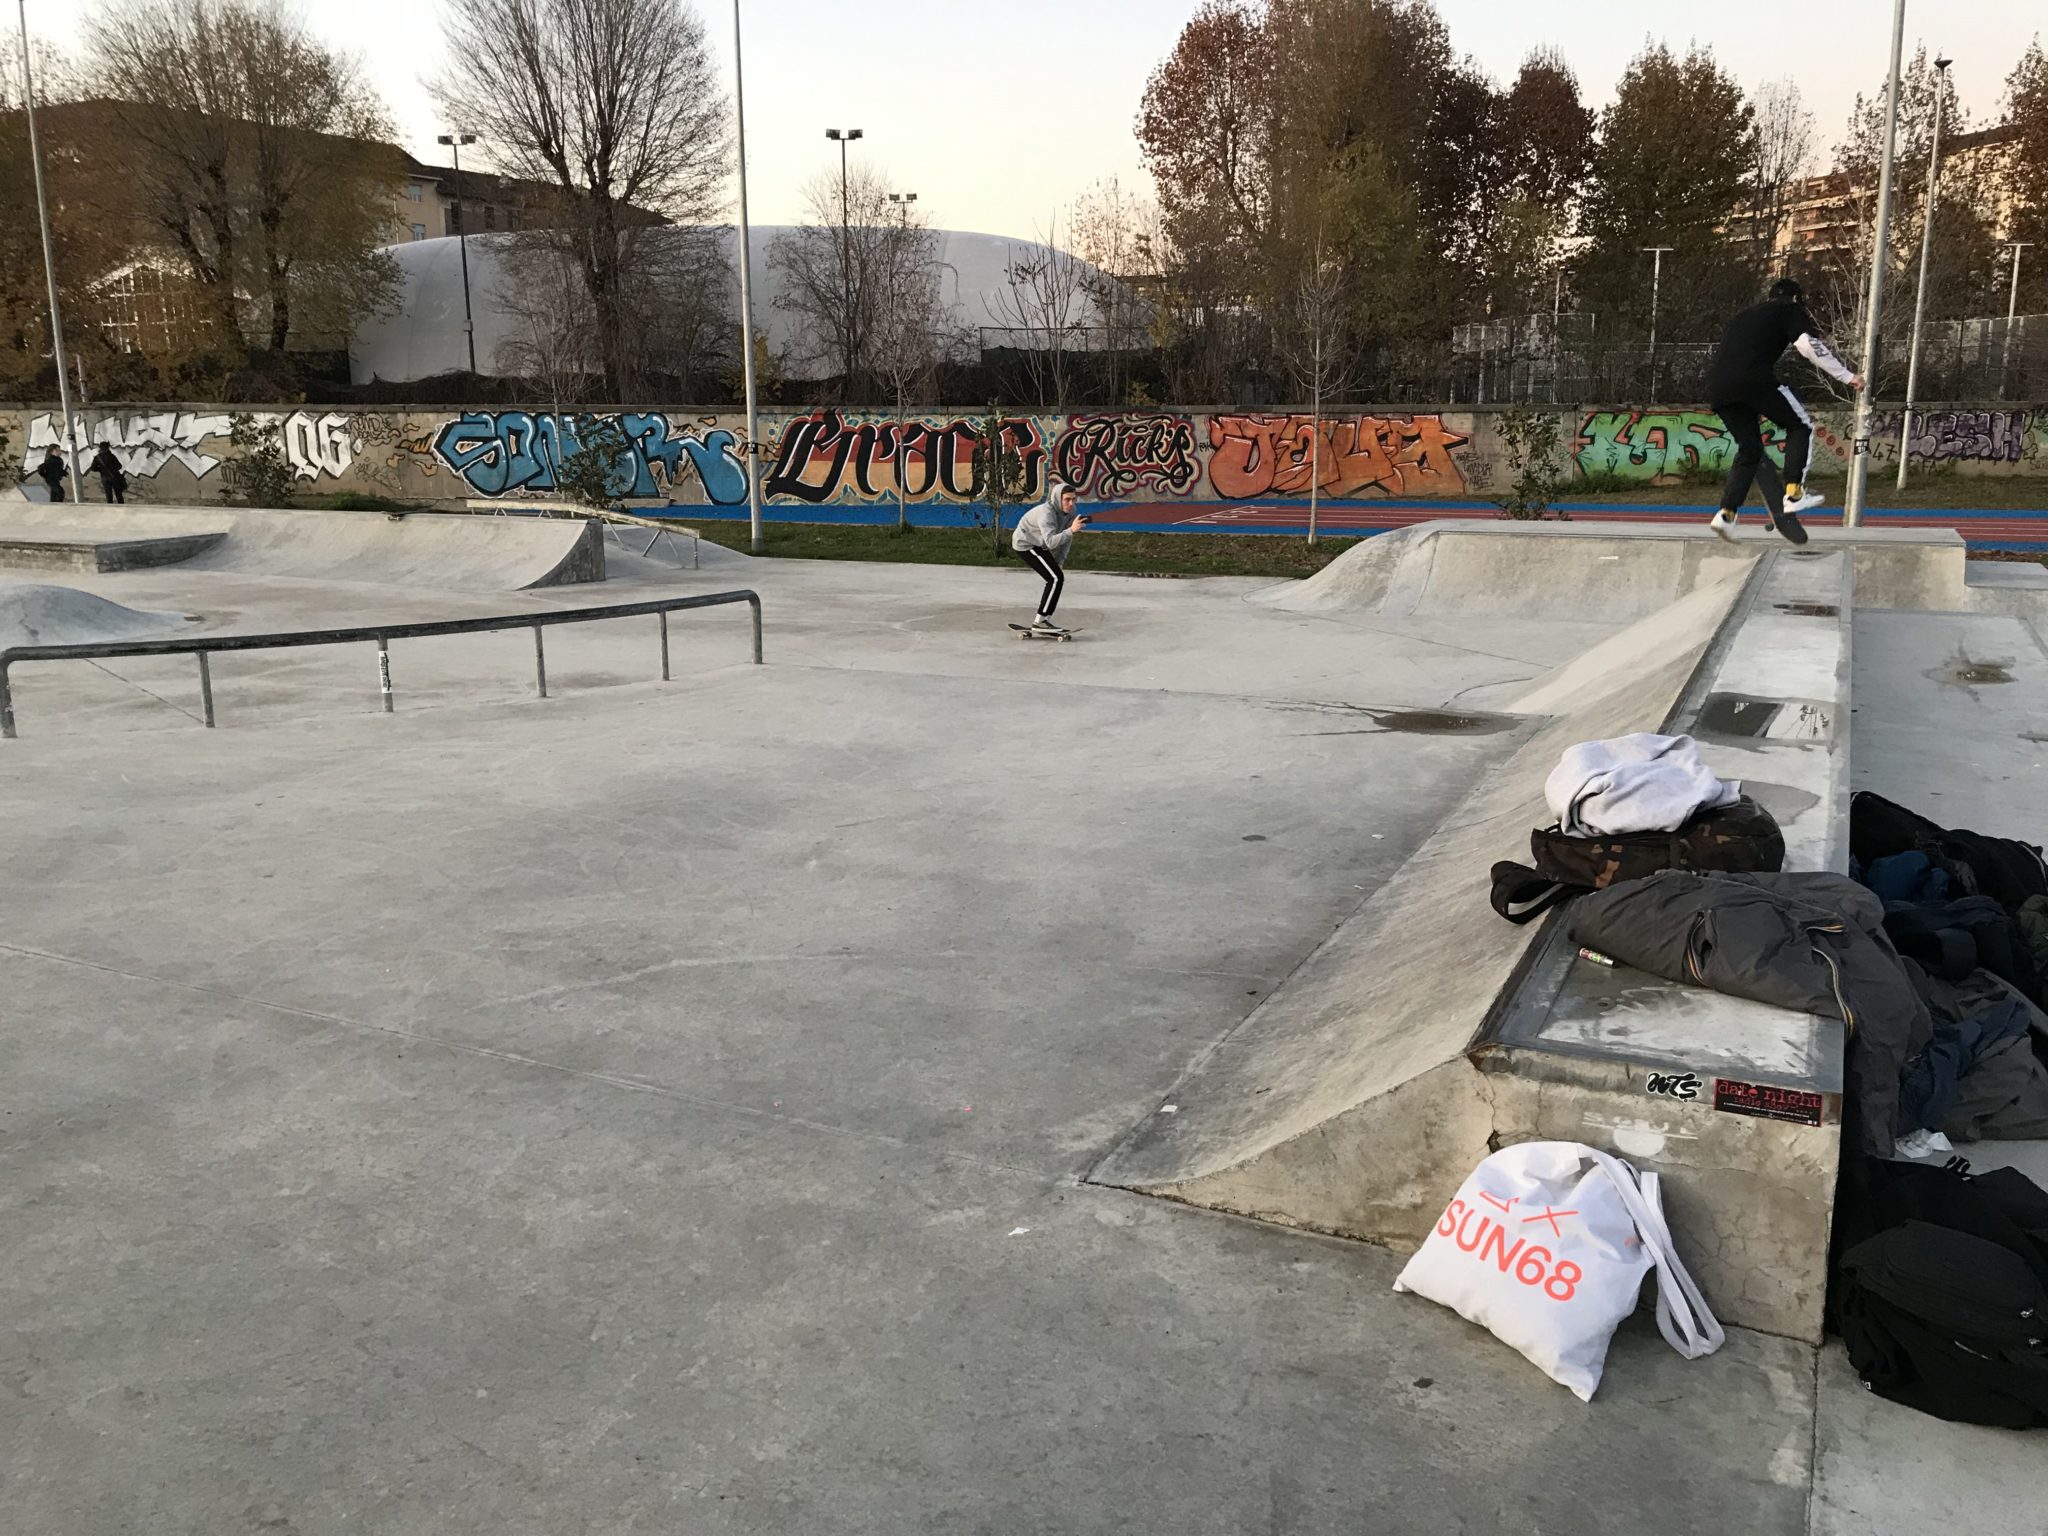  A Torino, nel parco intitolato a Pietro Mennea, c'è un luogo dove correre: il Marmolada Skatepark, uno spazio di 1.600 metri quadrati dedicati allo skate